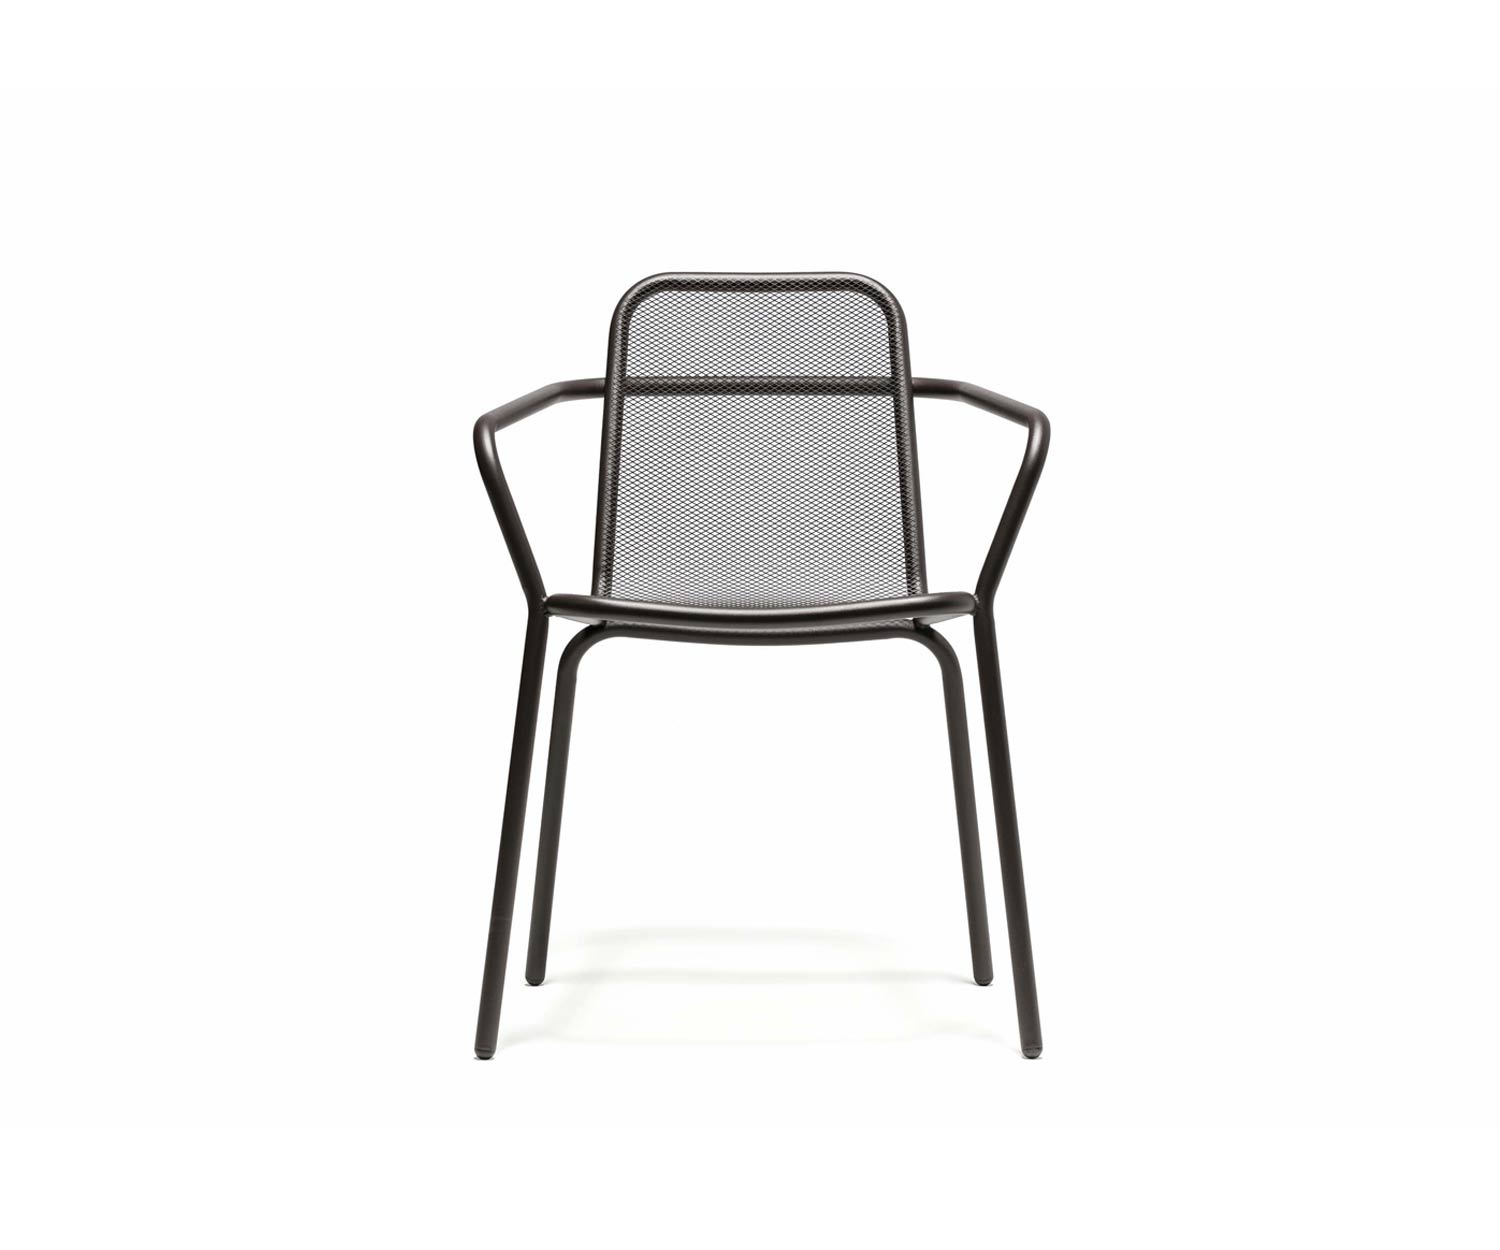 Exclusieve Todus Starling design fauteuil met antraciet onderstel